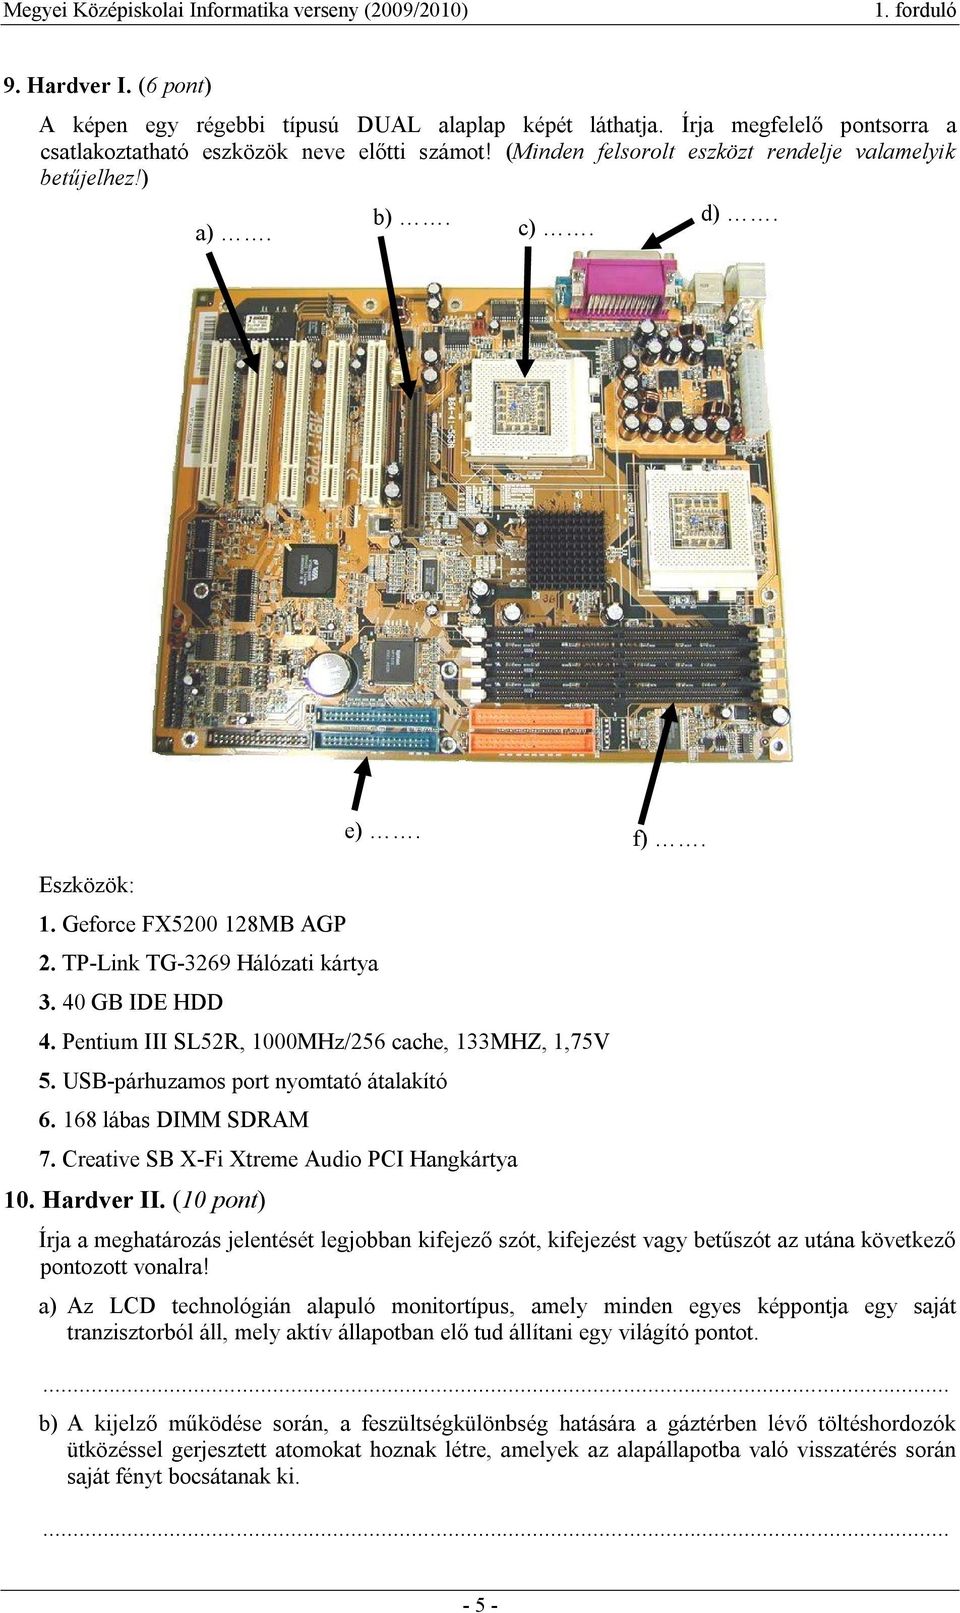 Pentium III SL52R, 1000MHz/256 cache, 133MHZ, 1,75V 5. USB-párhuzamos port nyomtató átalakító 6. 168 lábas DIMM SDRAM 7. Creative SB X-Fi Xtreme Audio PCI Hangkártya 10. Hardver II. (10 pont) e). f).